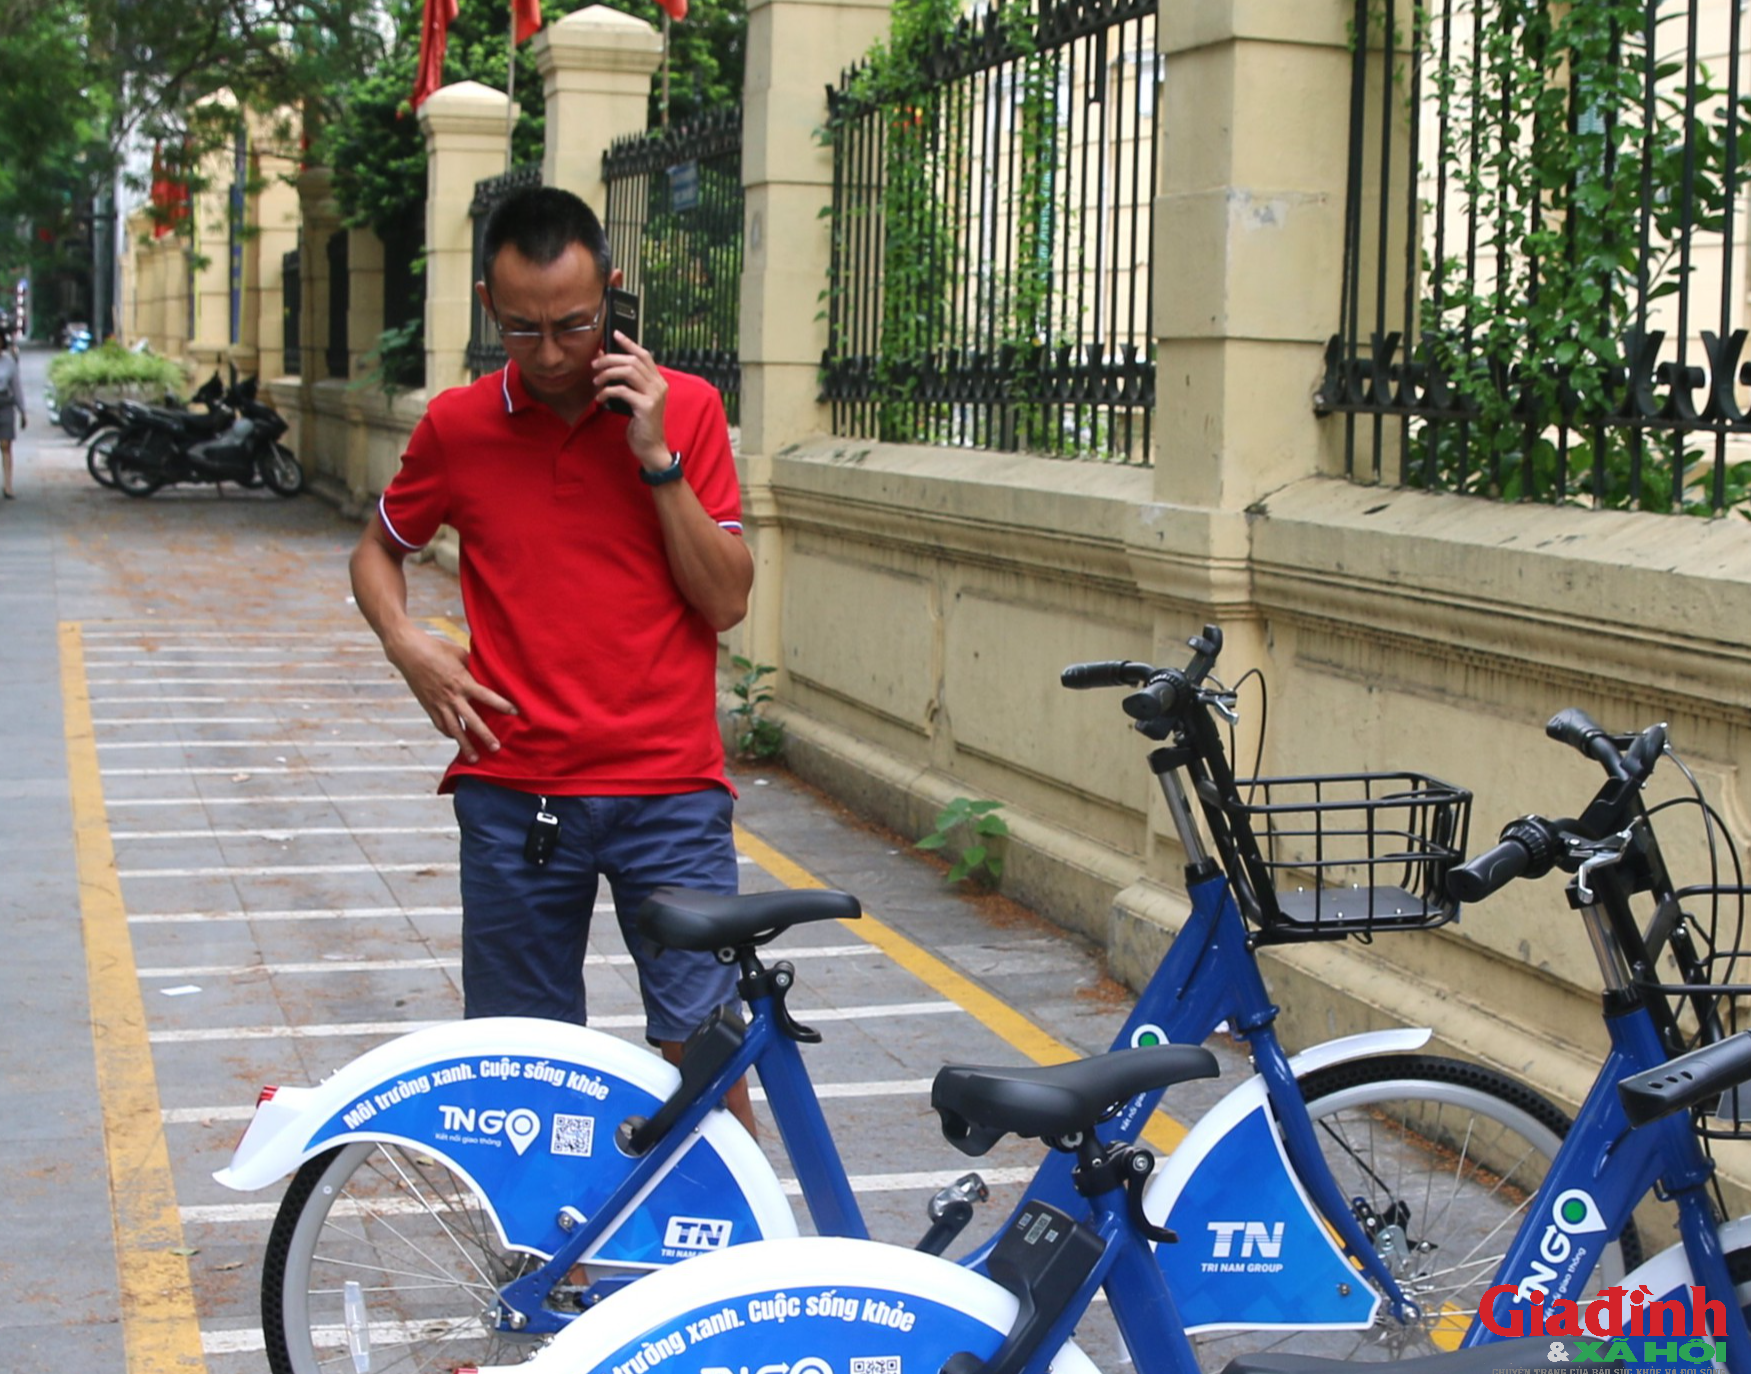 Dịch vụ xe đạp công cộng được triển khai tại Hà Nội và kỳ vọng thay đổi thói quen tham gia giao thông - Ảnh 4.